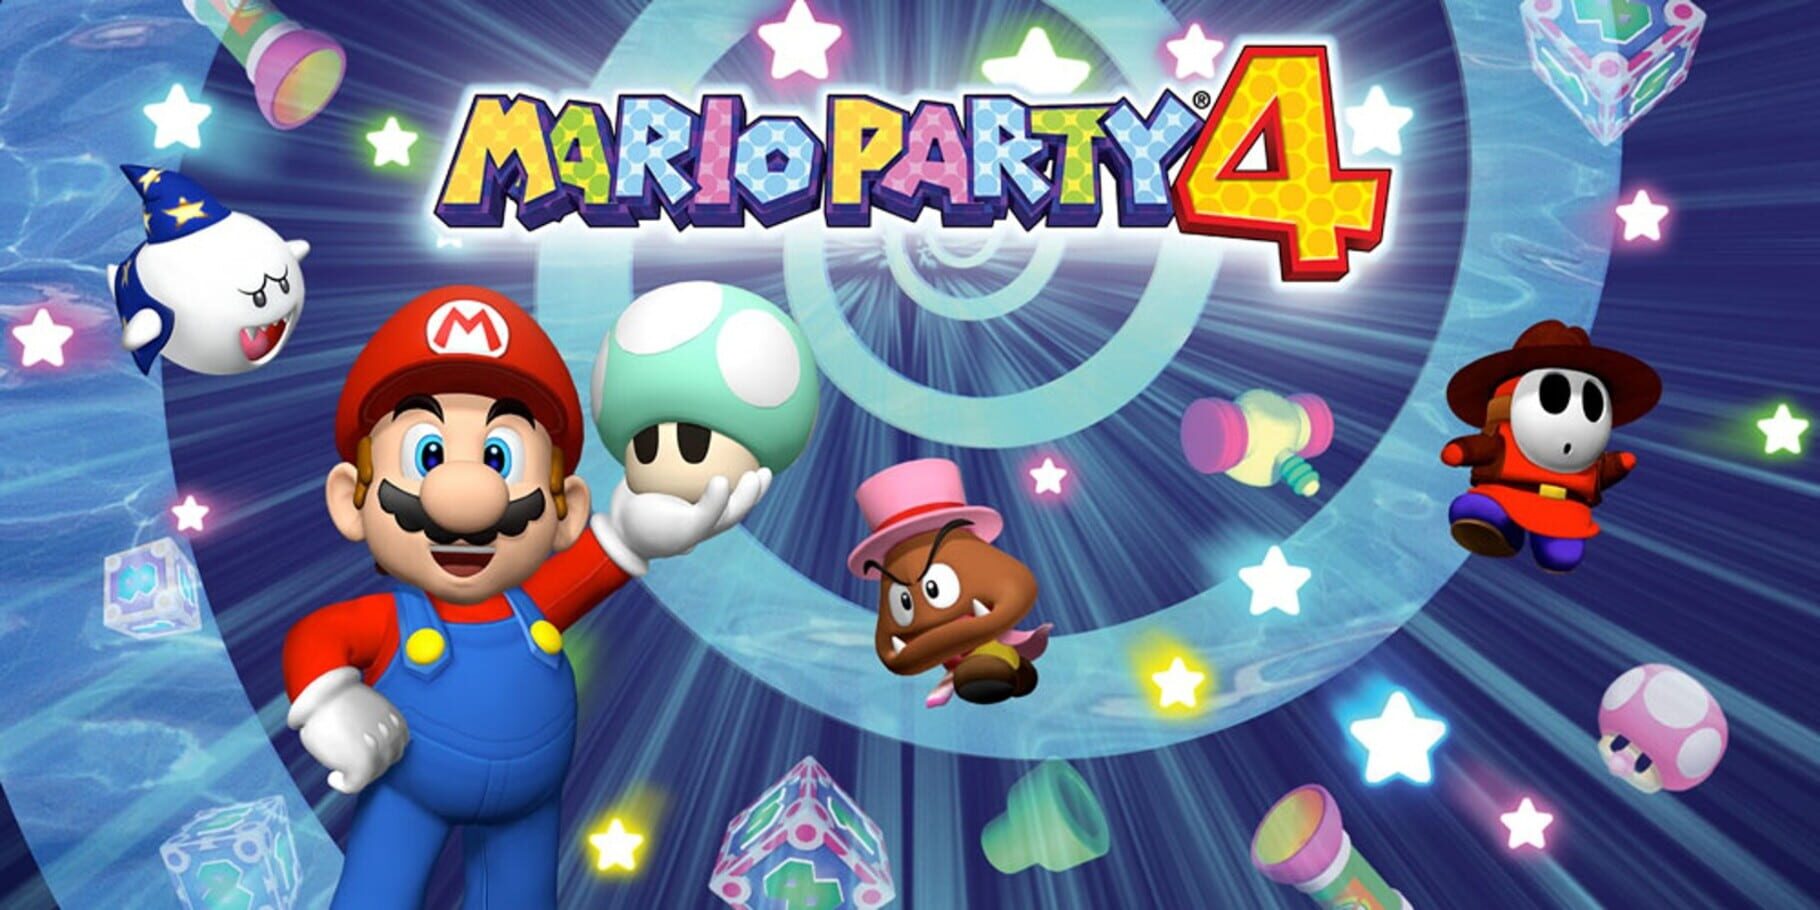 Arte - Mario Party 4